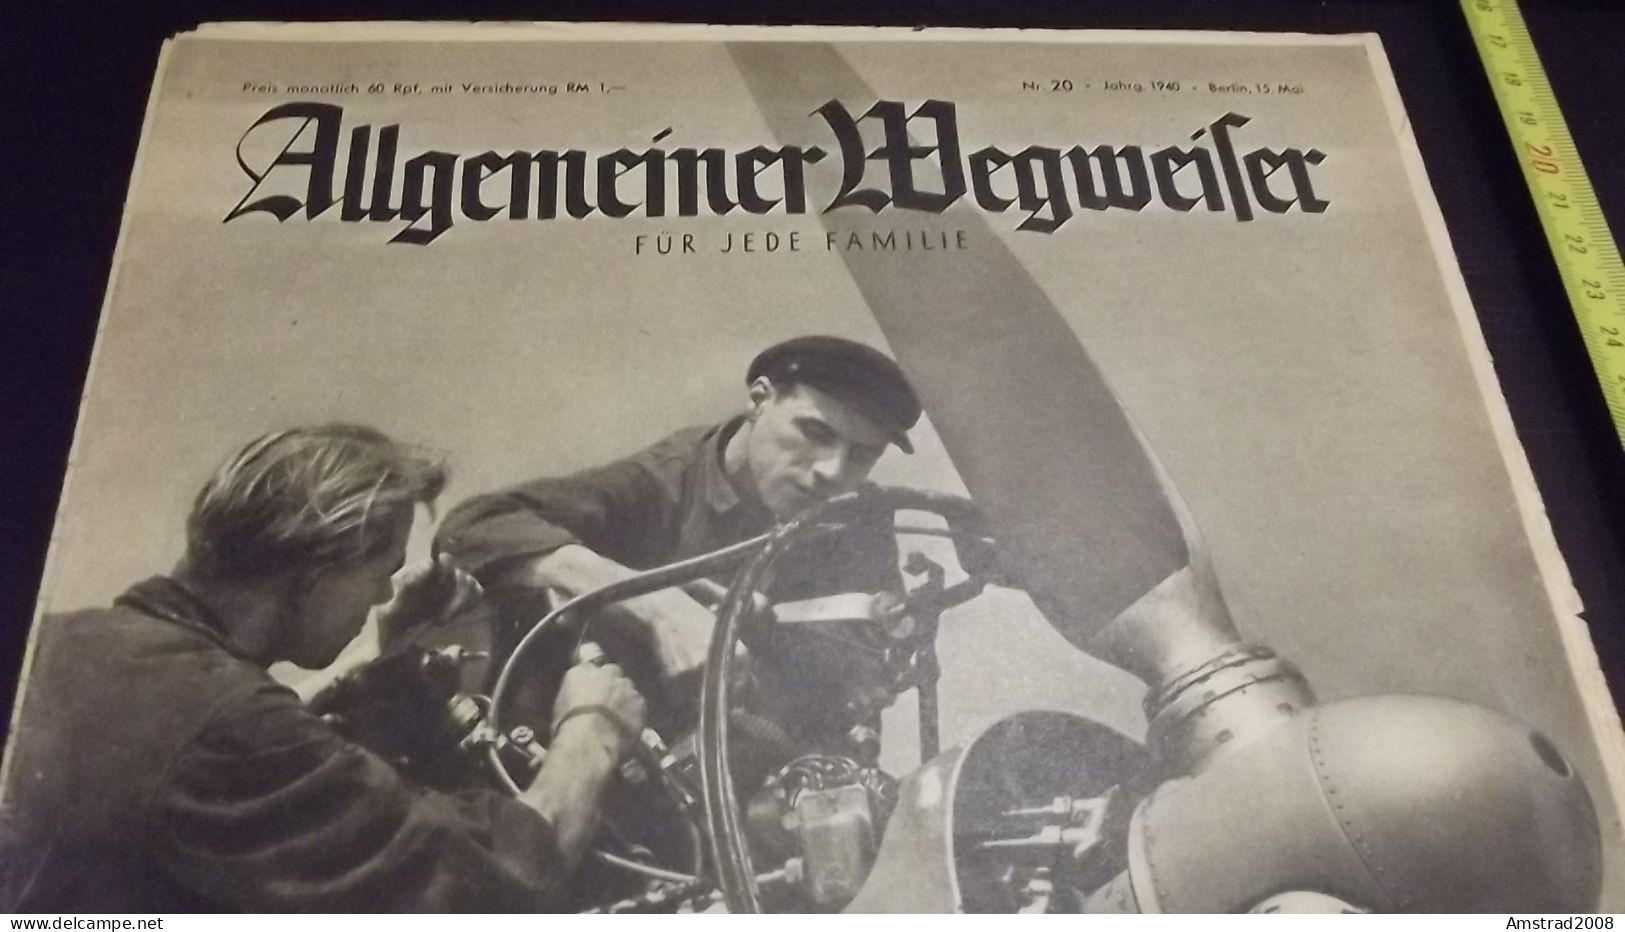 1940- ALLGEMEINER WEGWEISER - FUR JEDE FAMILIE  - GERMANY - GERMANIA THIRD REICH - ALLEMAGNE - DEUTSCHLAND - Hobbies & Collections